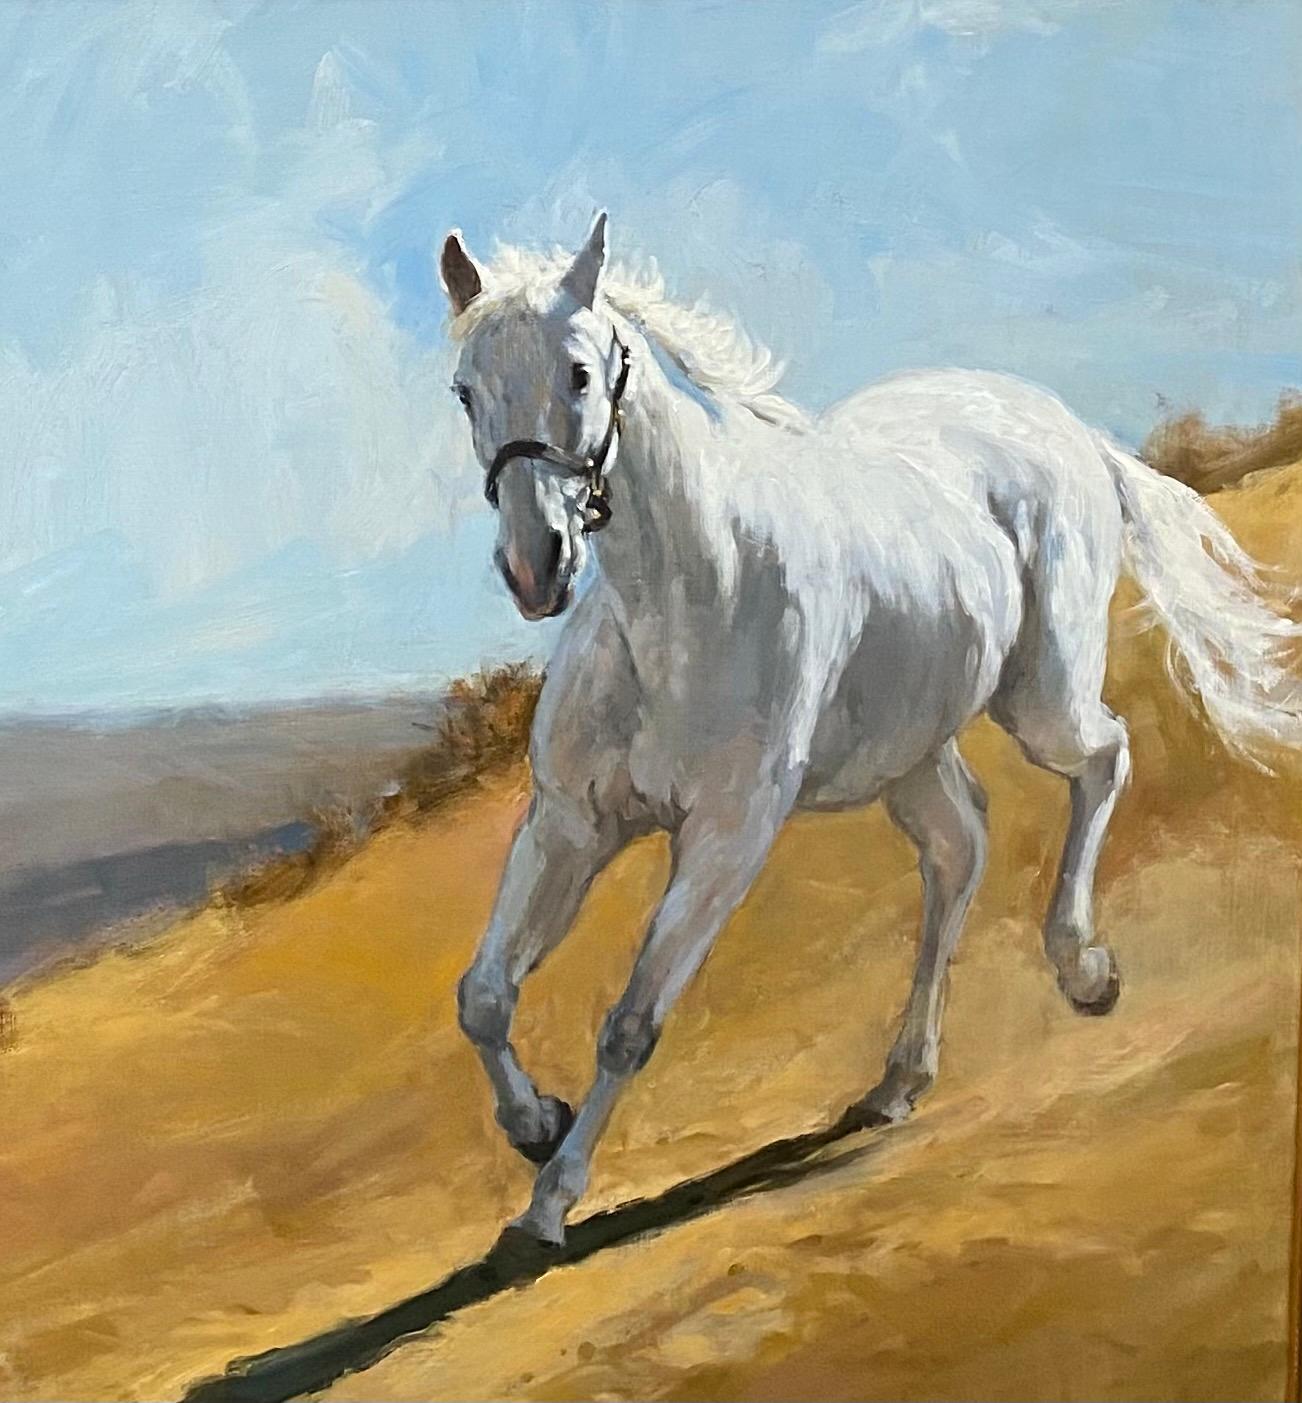 Das Licht zu tragen,  dieses elegante, weiße Pferd, gebietet Respekt, wenn es frei den Berg hinunter zur Wiese galoppiert. So anmutig setzt er seine Herrschaft über diese Pferdelandschaft durch.  Diese realistische Darstellung von Kraft und Anmut